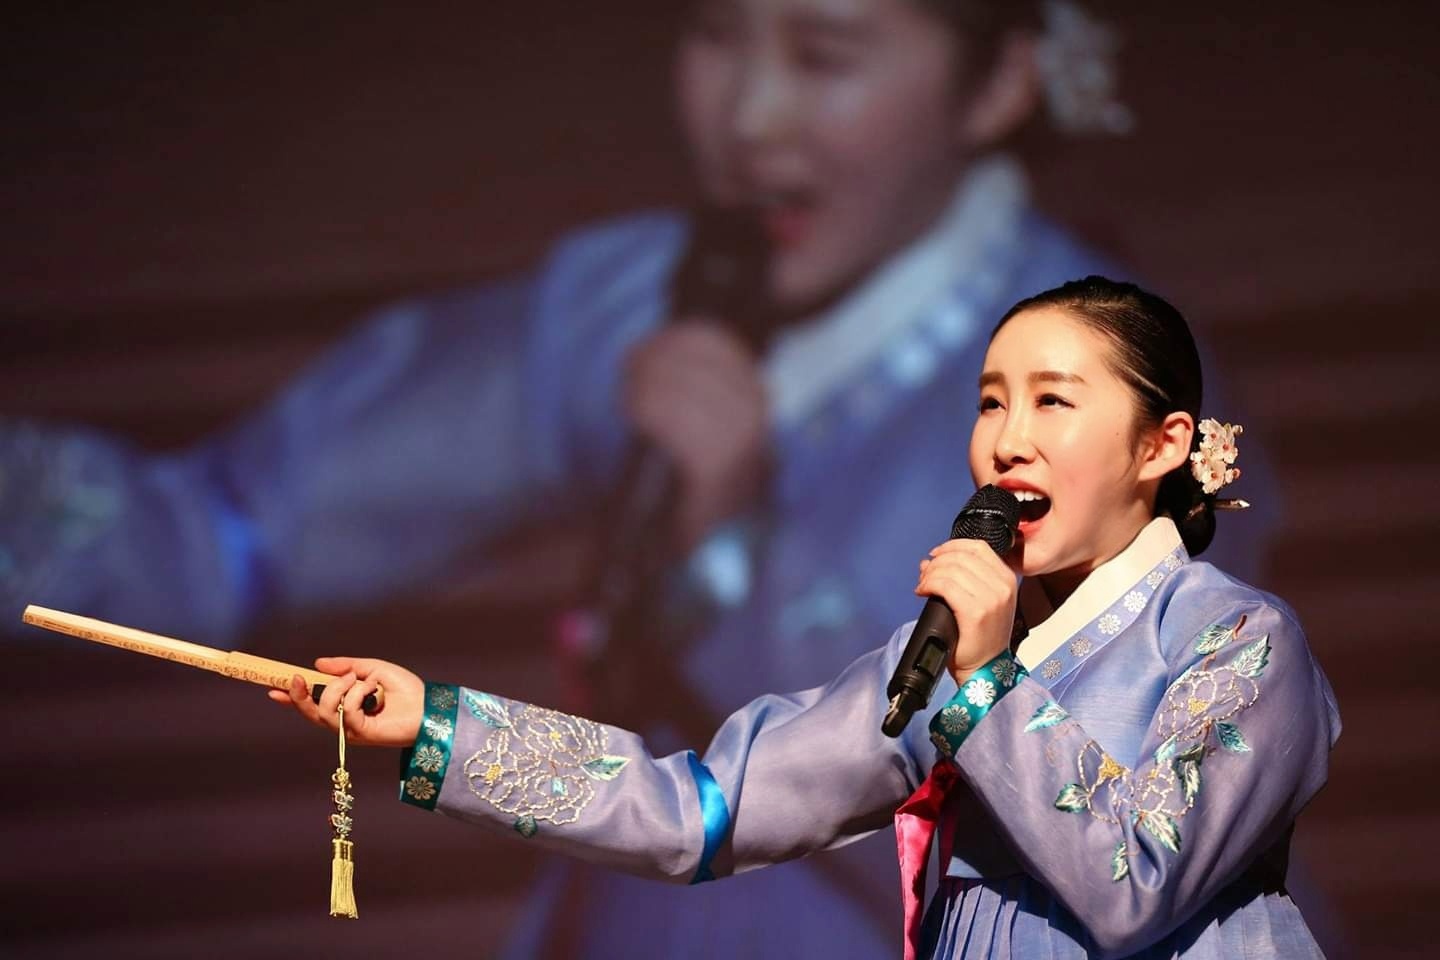 김수지 명창이 지난 2월 뉴질랜드 공연에서 배띄워라를 열창하고 있다. 한국판소리보존회 제공